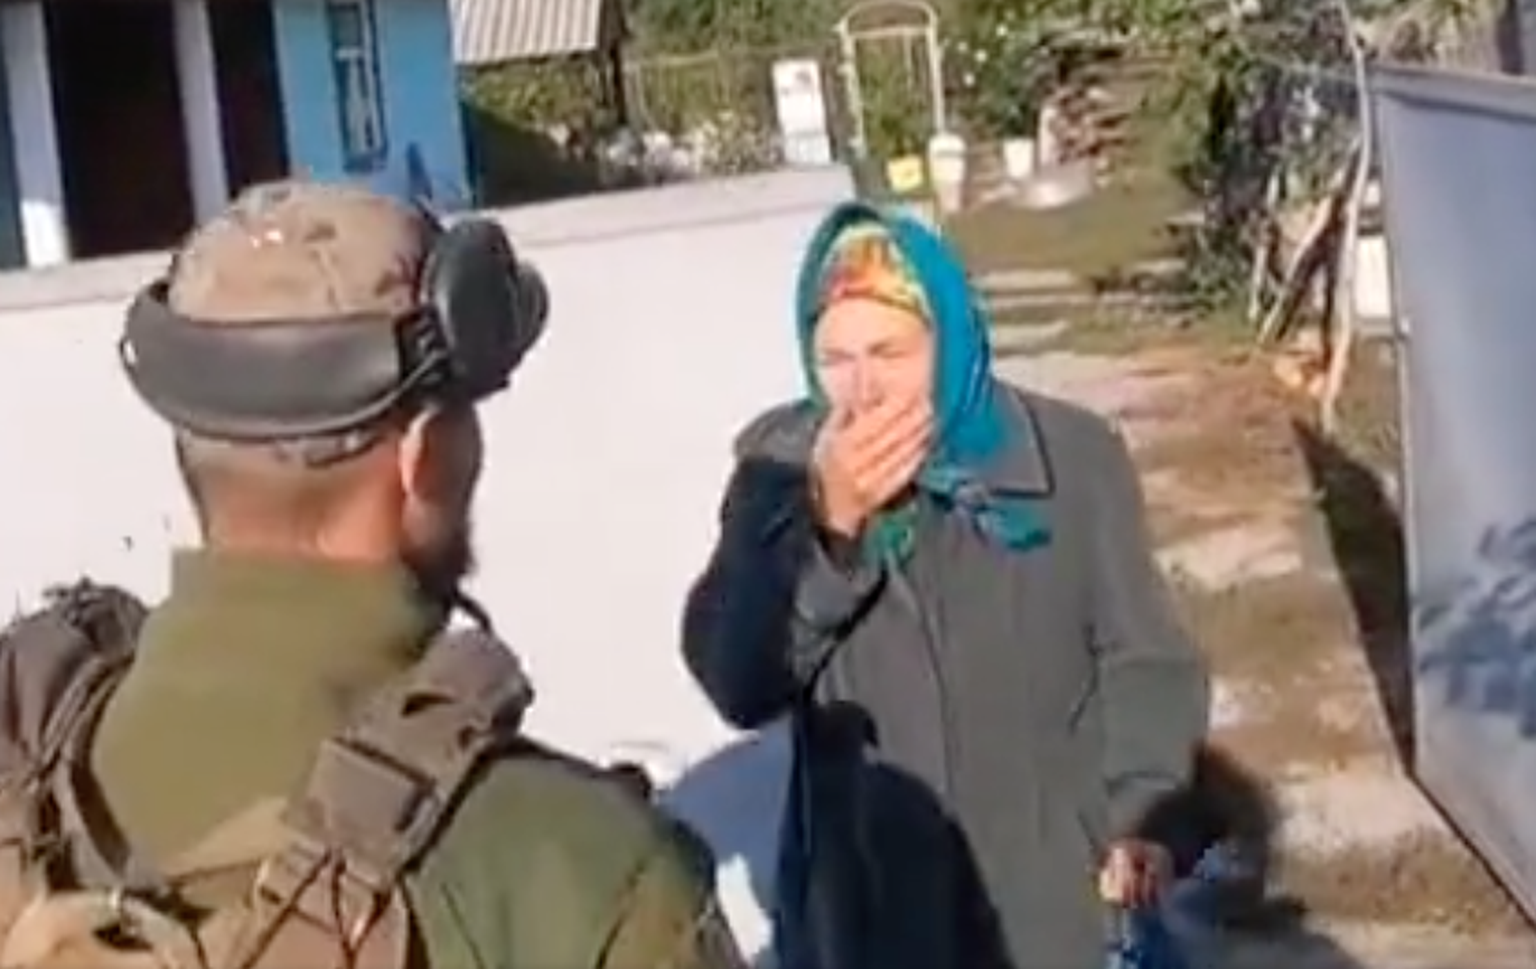 Internetis levivad südamlikud videod sellest, kuidas õnnelikud kohalikud tervitavad Ukraina sõdureid vabastatud territooriumil Harkivi oblastis.